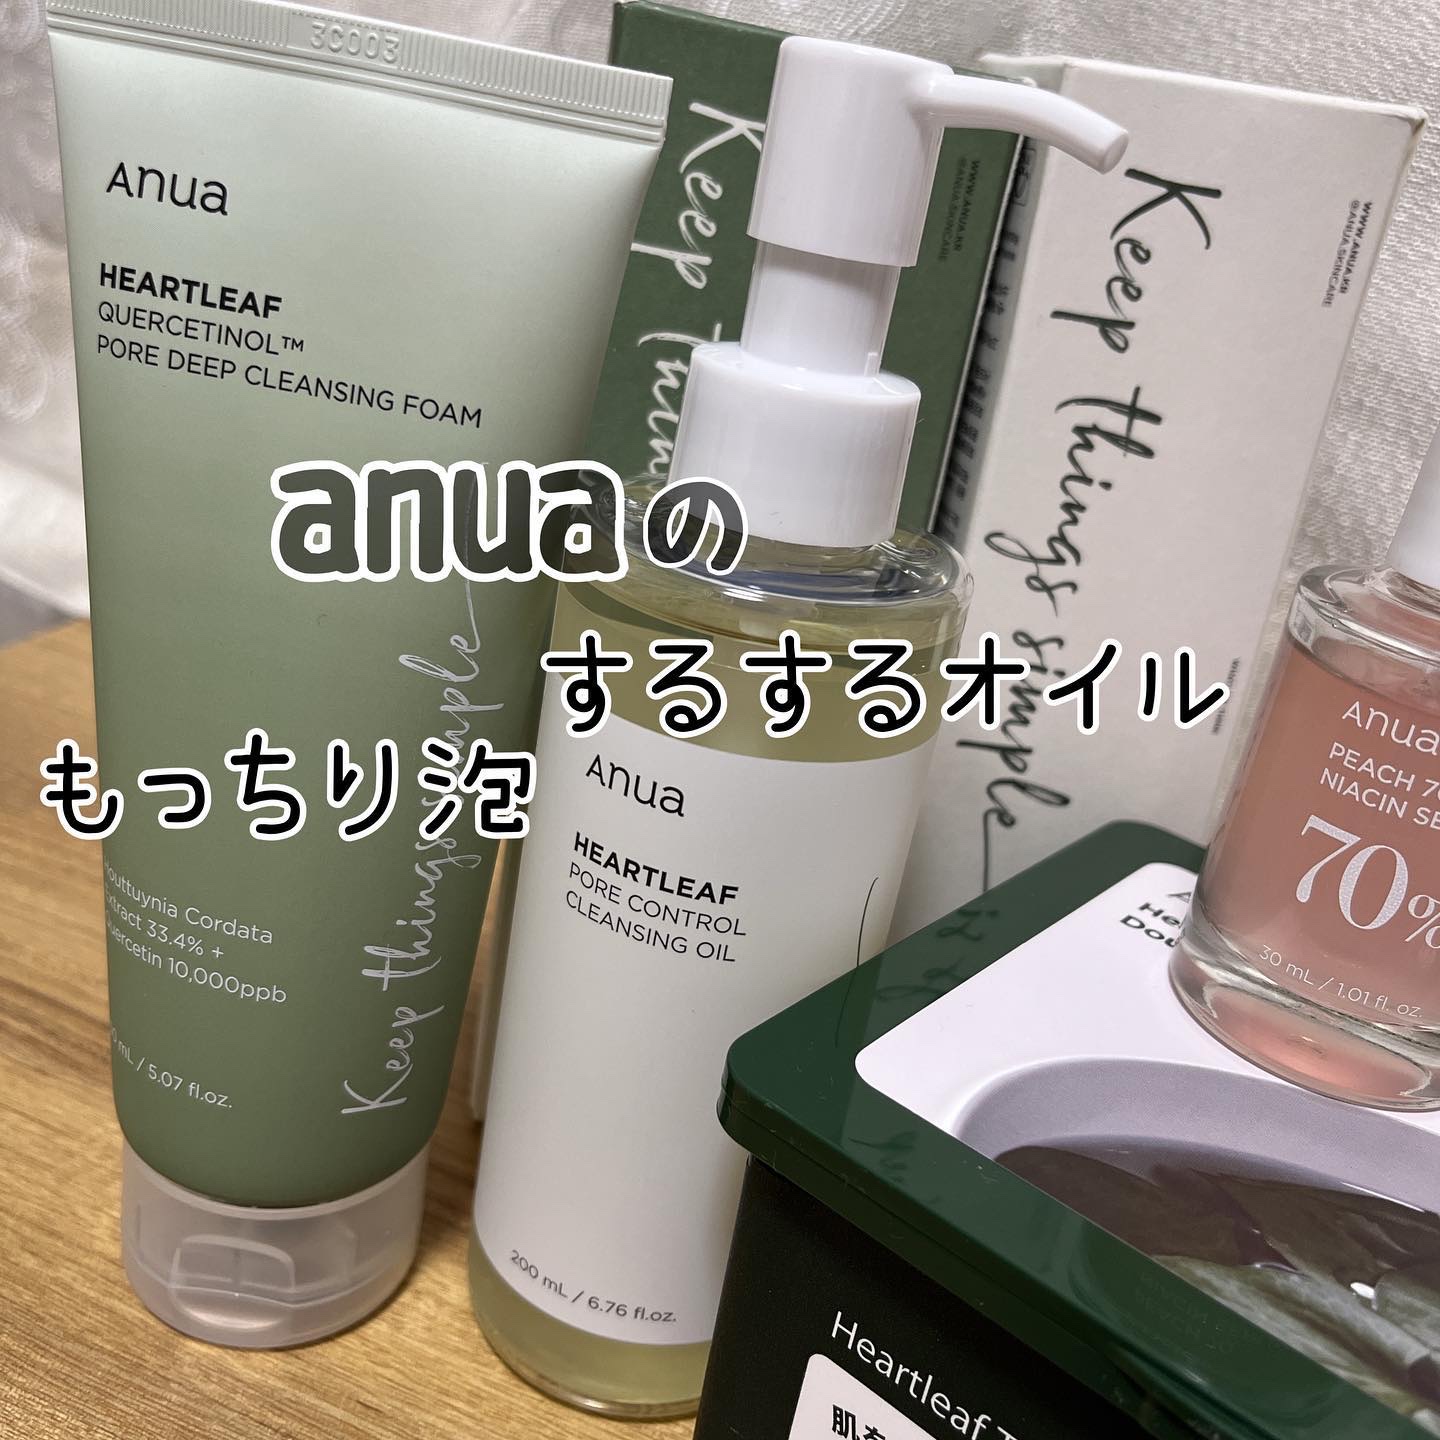 Anuaのスキンケア・基礎化粧品 ドクダミ ポアコントロールクレンジング